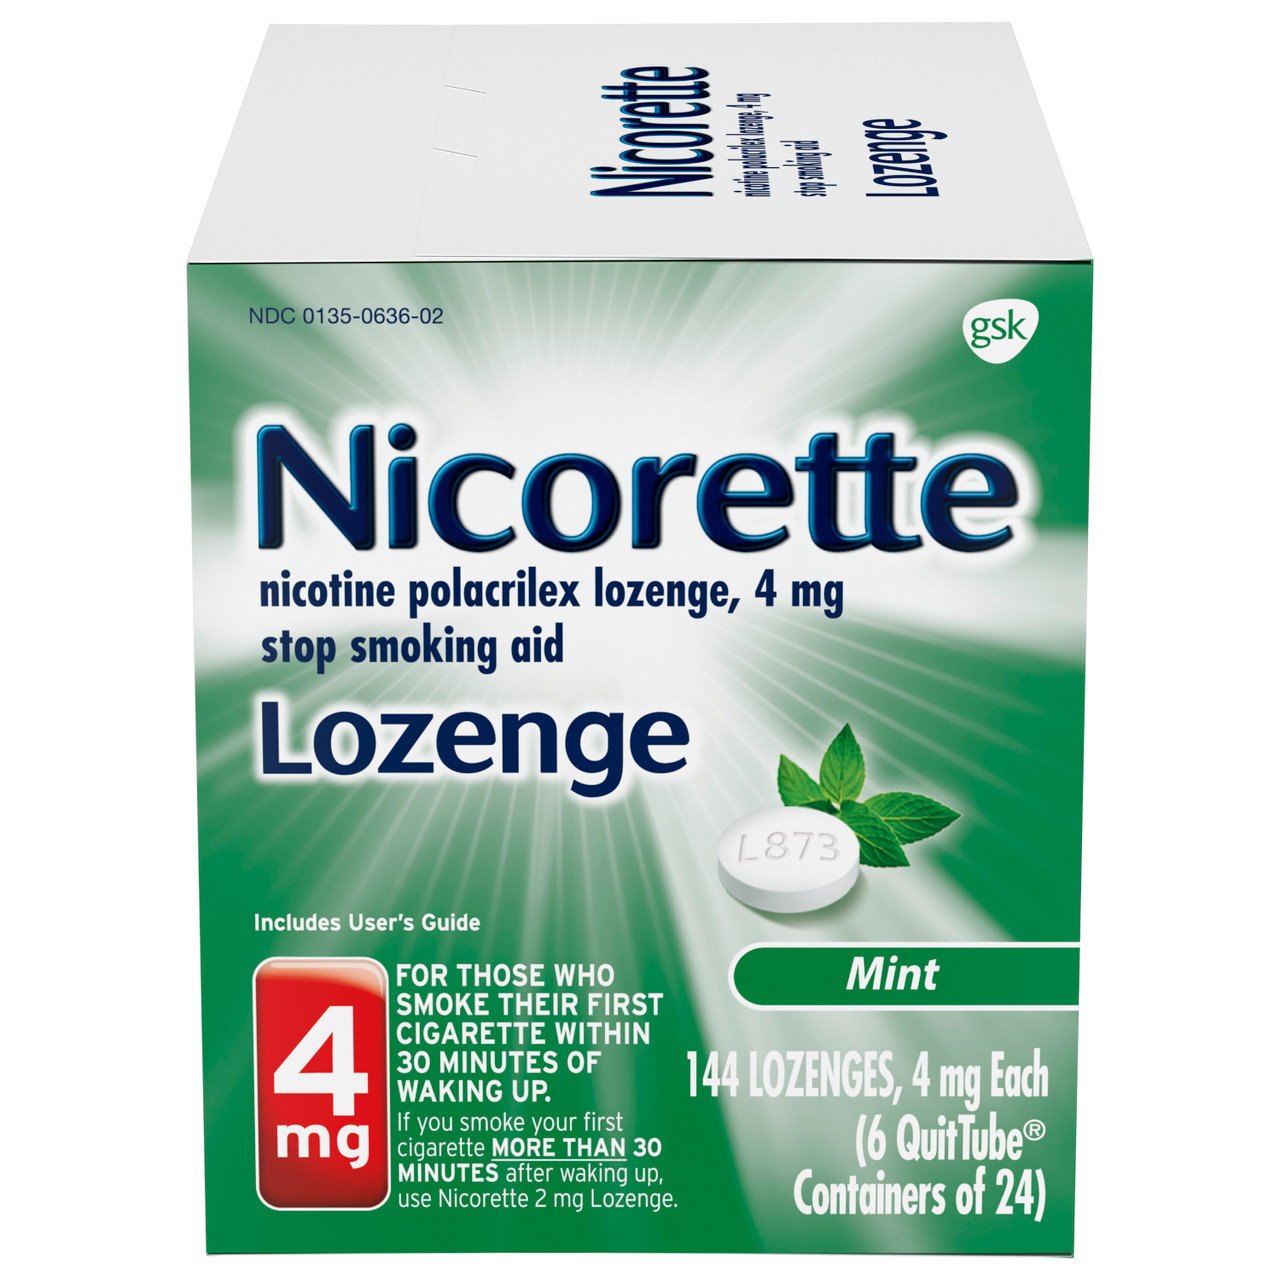 Nikotinspray von NICOTIN AL online kaufen 